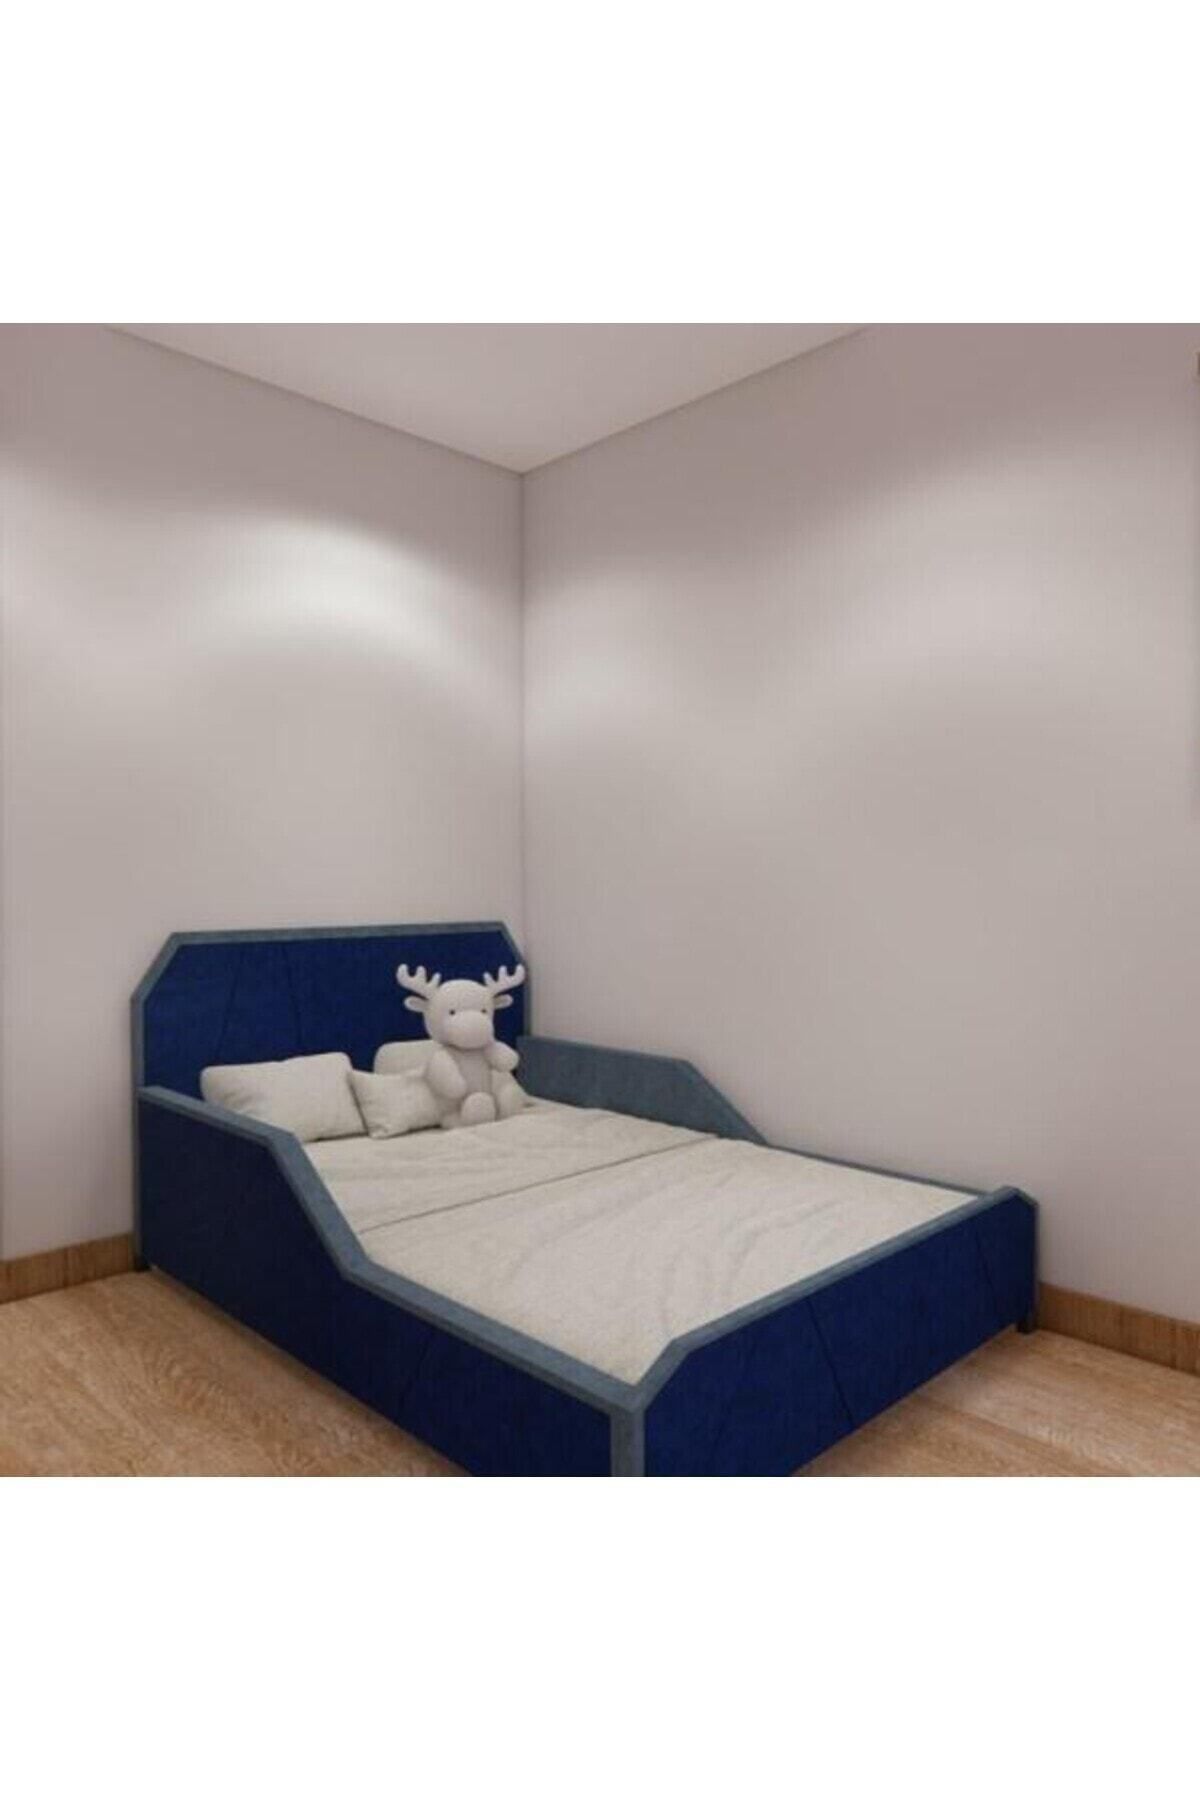 Puf Bebe 90x190 ölçüde Çocuk yatağı (iç yatak dahildir)